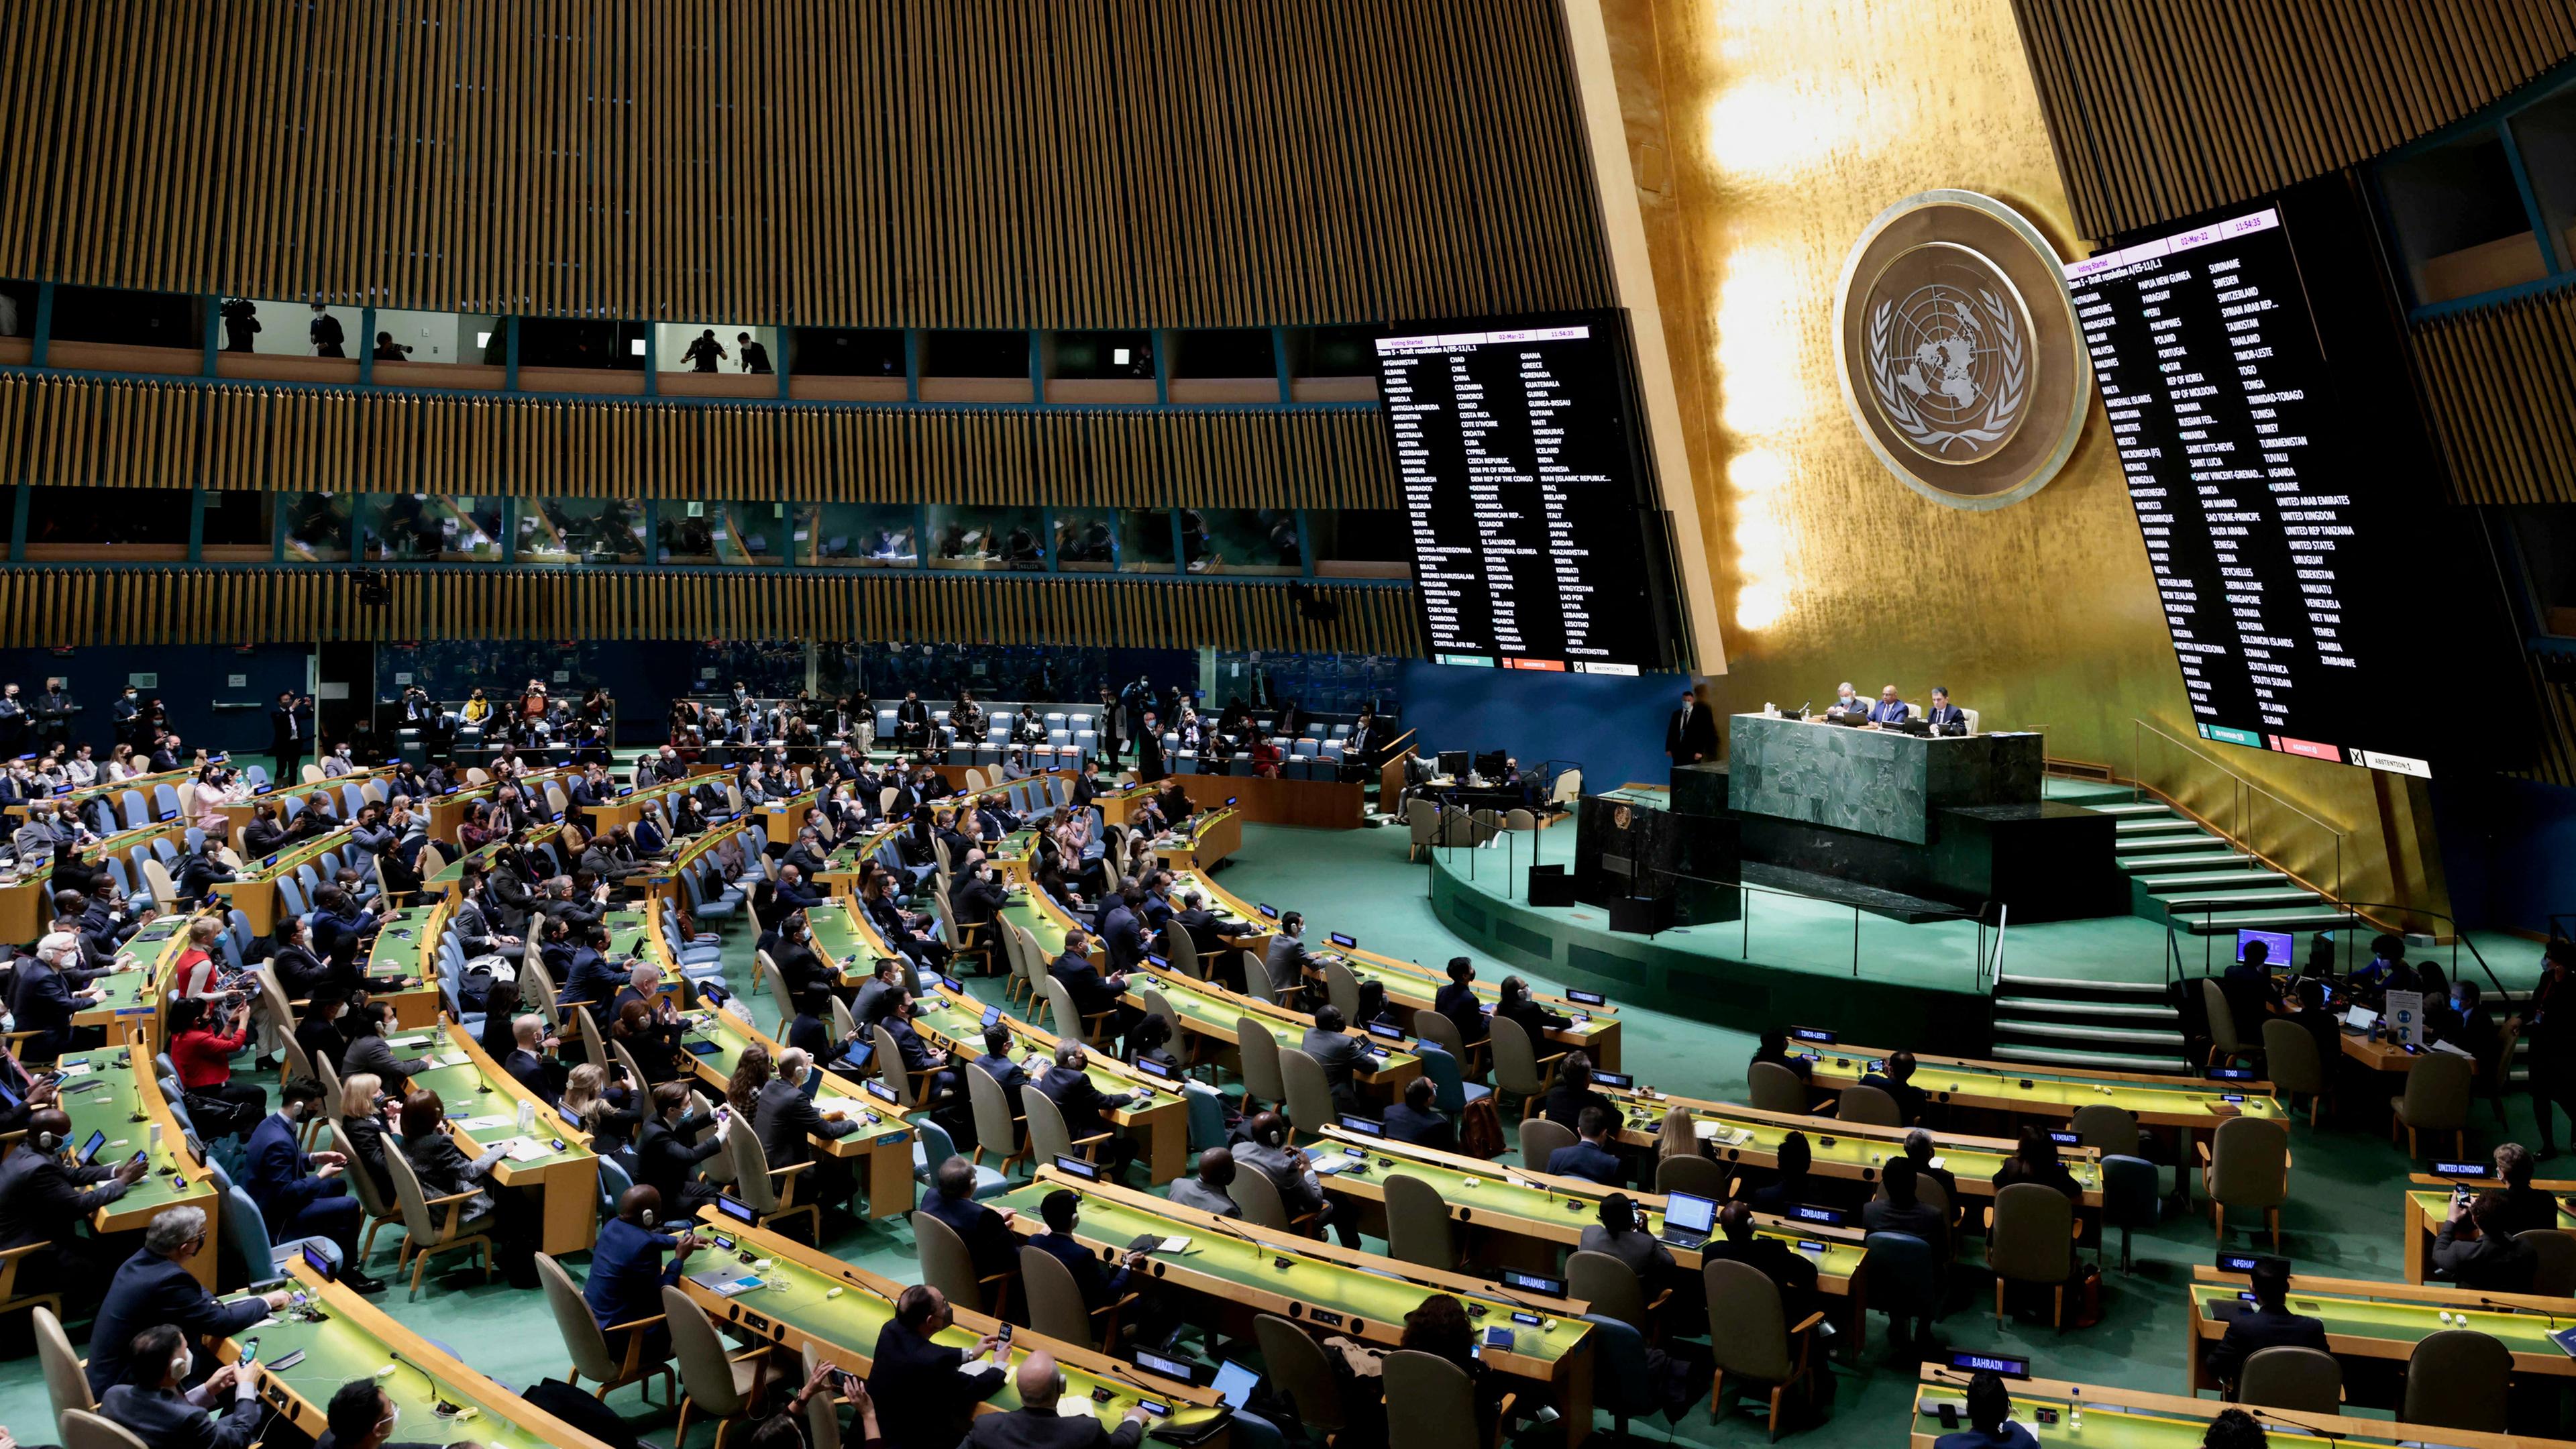 Ген оон. Генеральная Ассамблея ООН Нью-Йорк. Зал Генеральной Ассамблеи ООН. Главный зал Генассамблеи ООН. Генеральная Ассамблея ООН картинки.